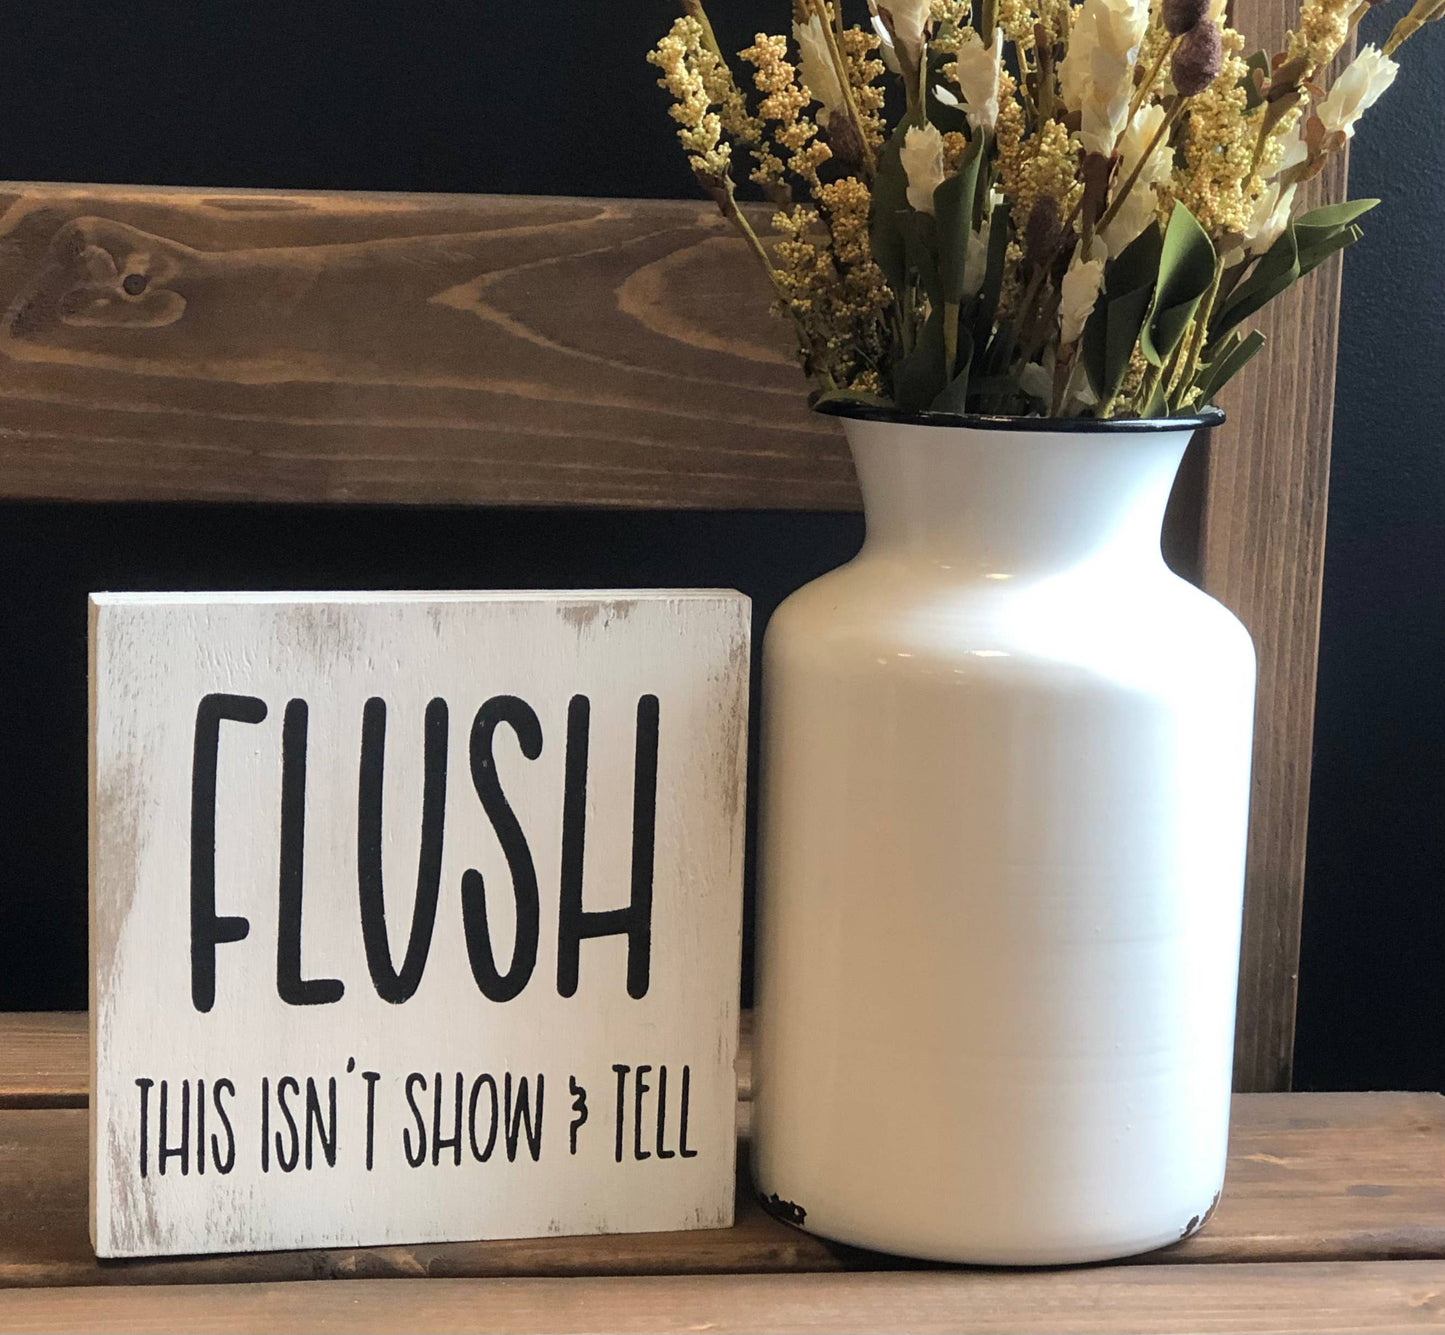 Flush - Funny Bathroom Rustic White Shelf Sitter